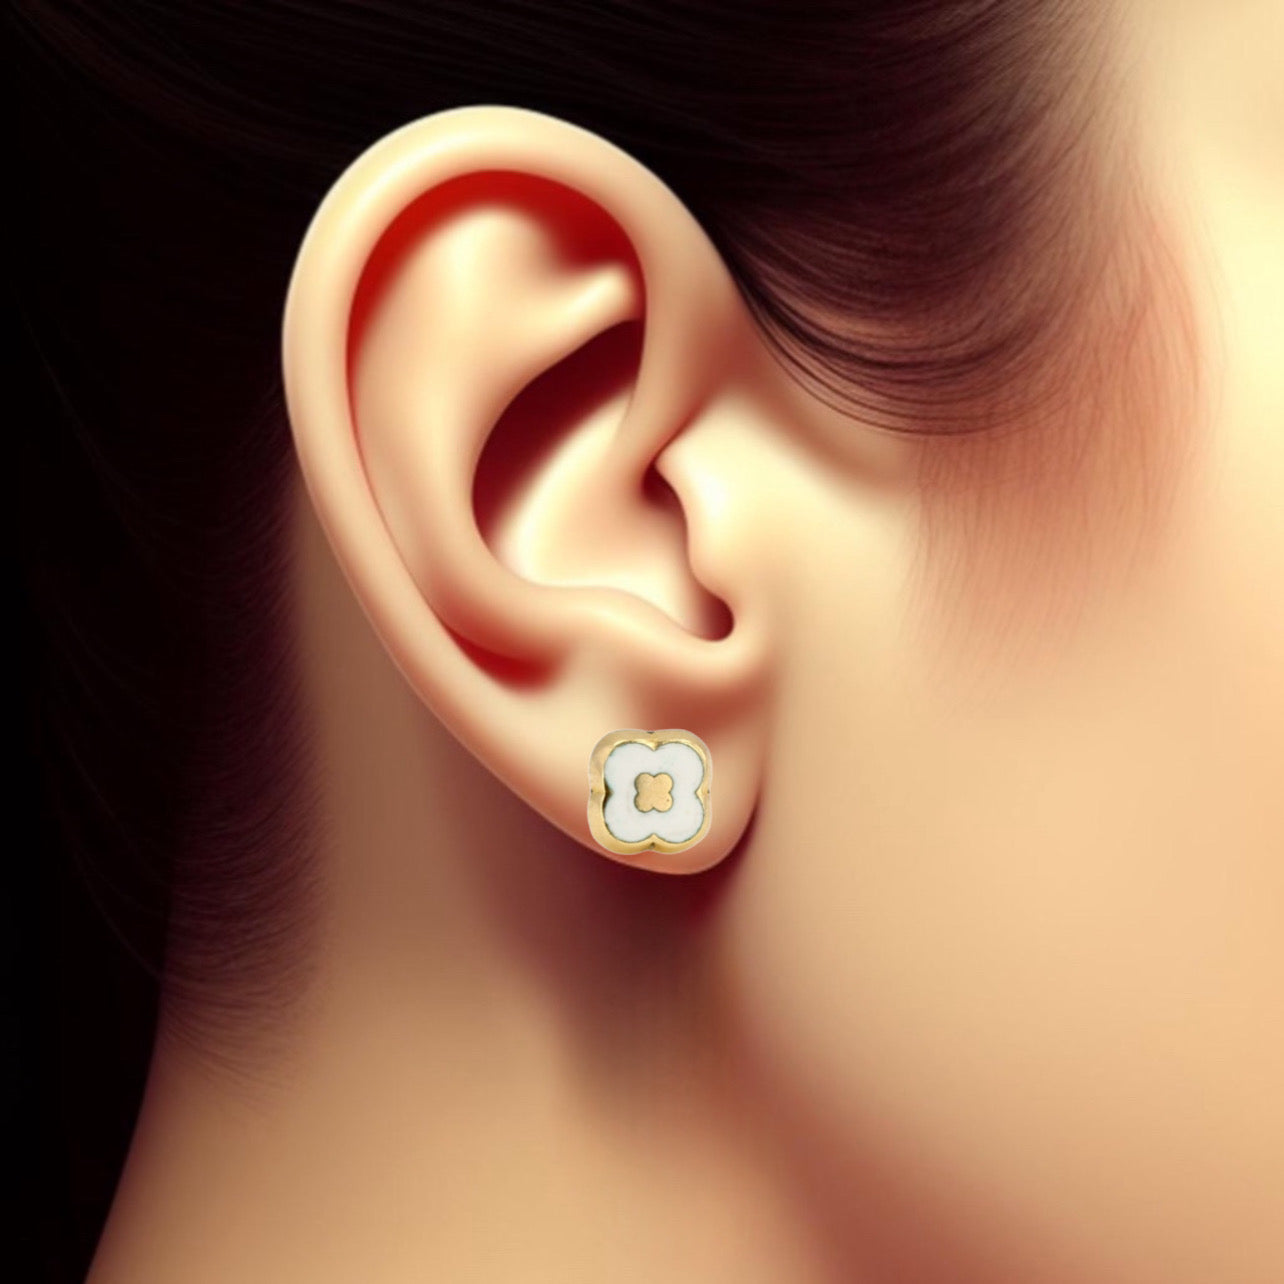 14K Yellow gold white clover studs earrings-45286